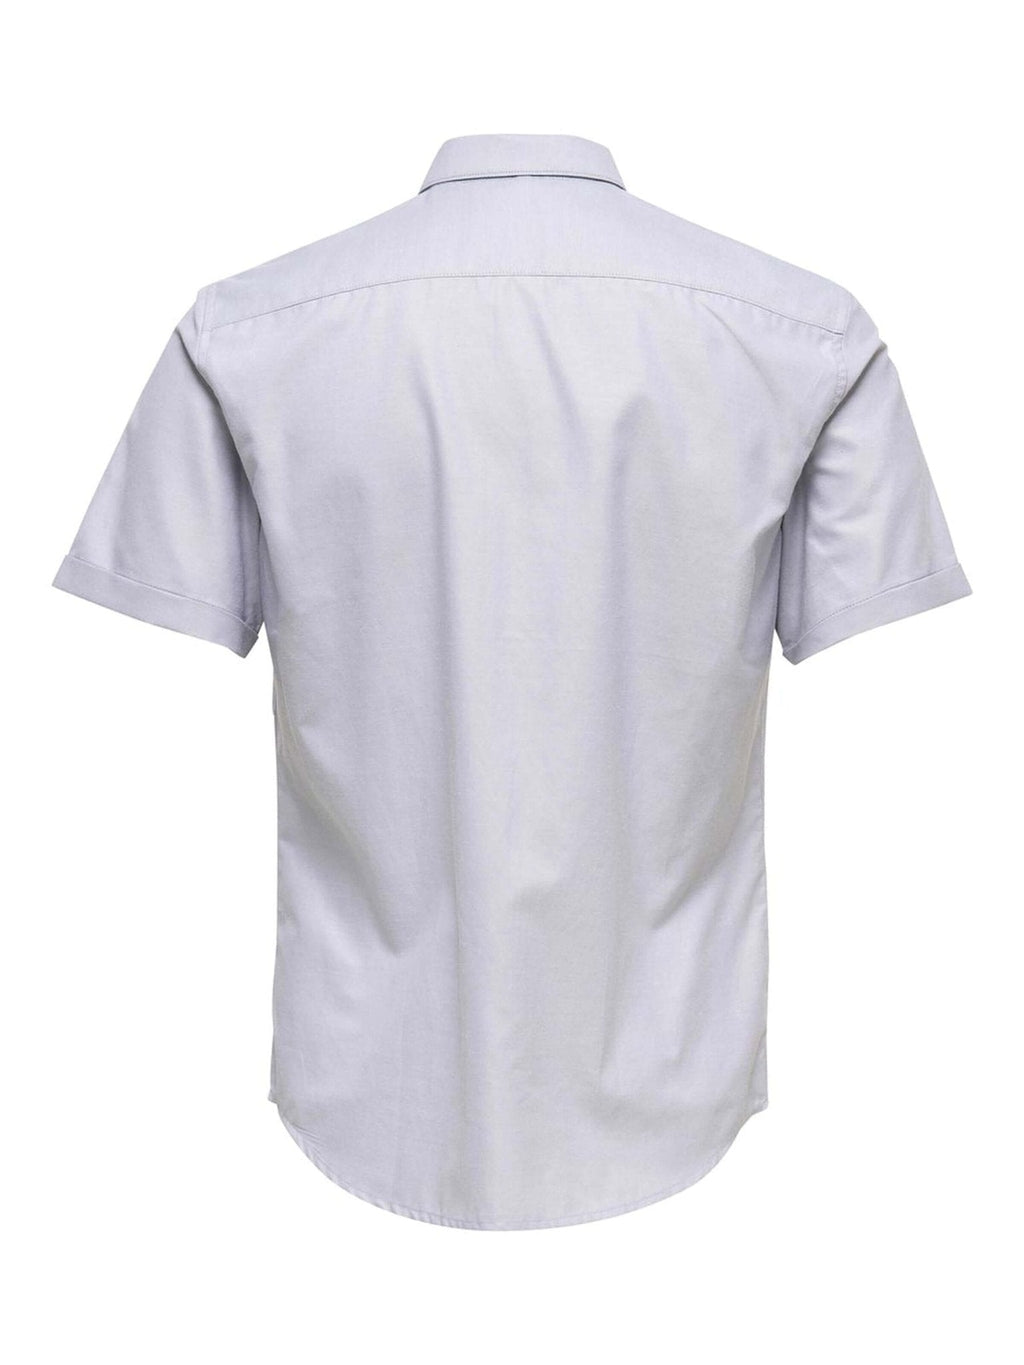 Marškinėliai trumpomis rankovėmis - šviesiai pilkos spalvos